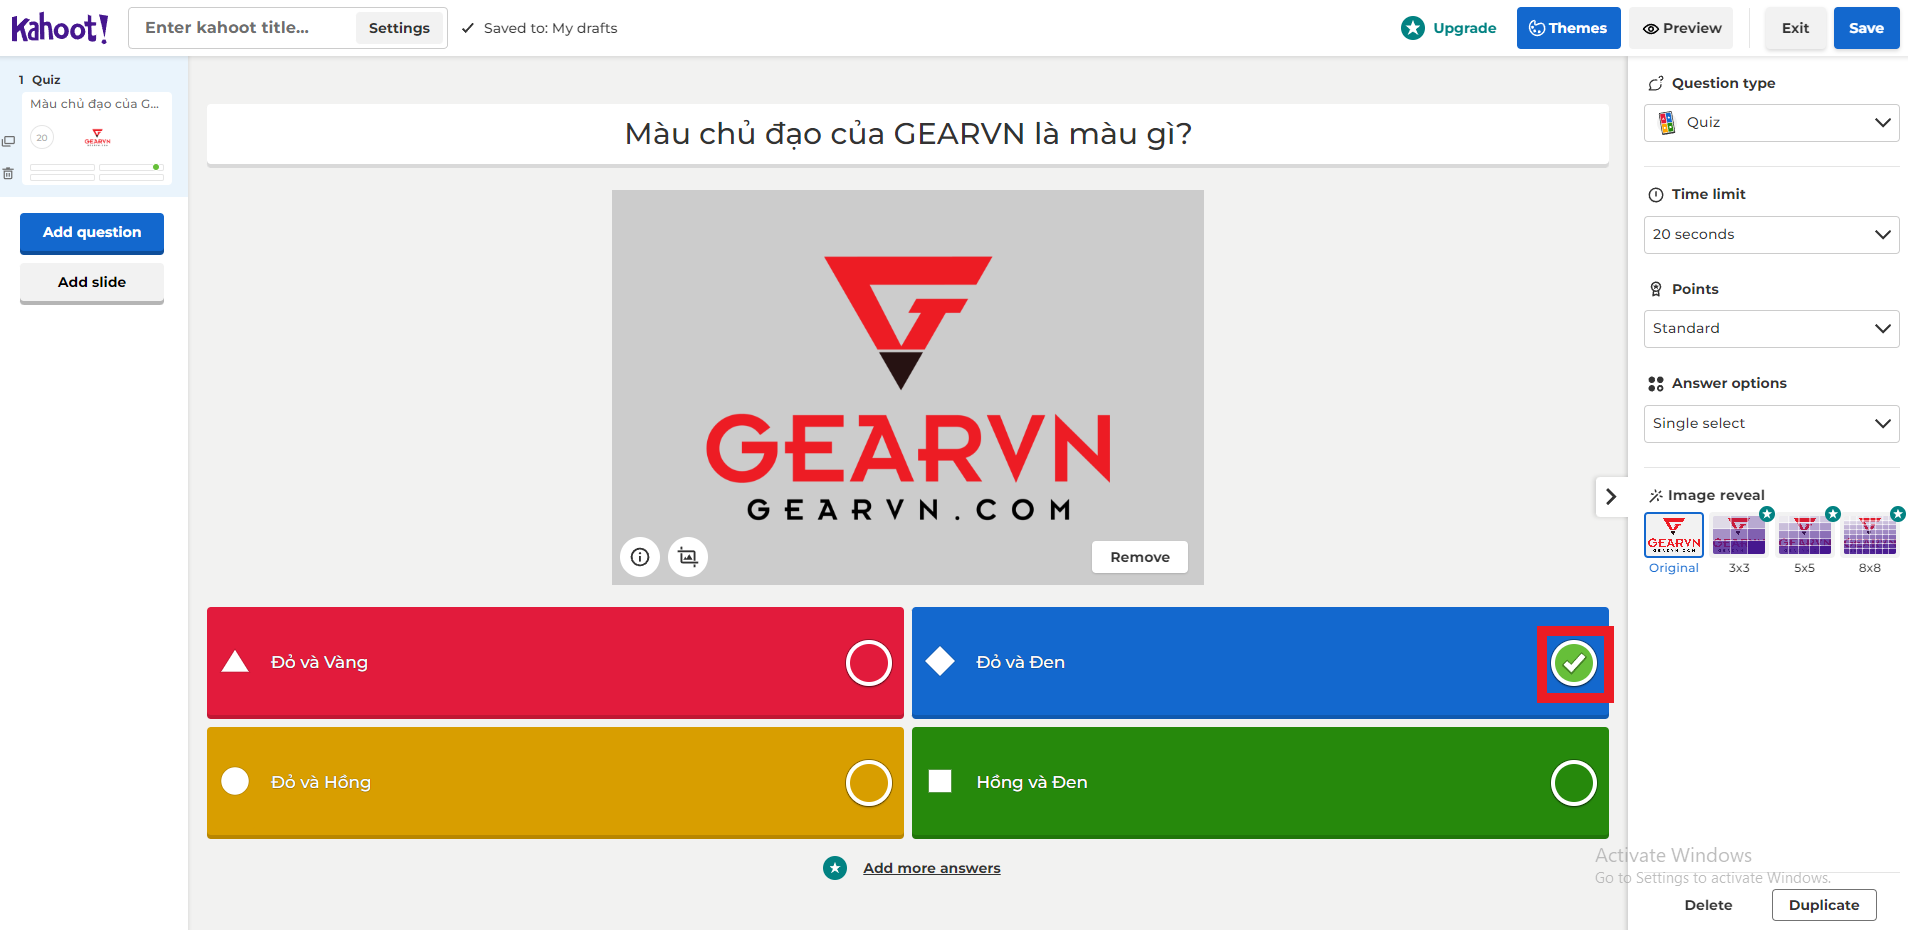 GEARVN - Chọn câu trả lời đúng trước khi chuyển qua câu hỏi tiếp theo